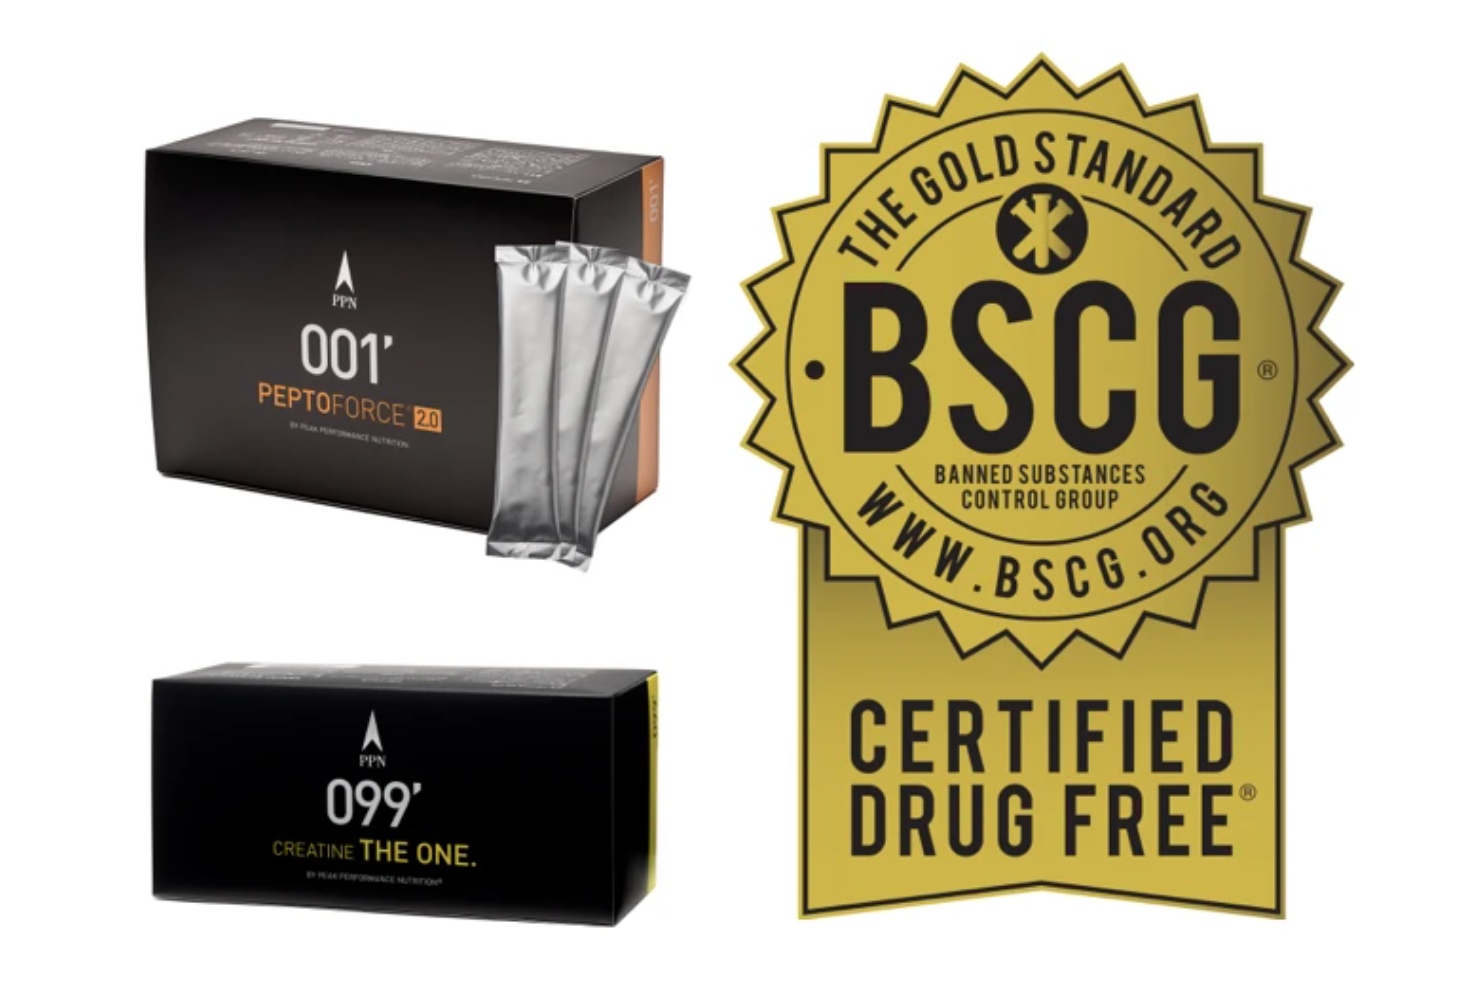 全ロット ドーピング検査の証【BSCG CERTIFIED DRUG FREEプログラム認定】新たに2商品で取得